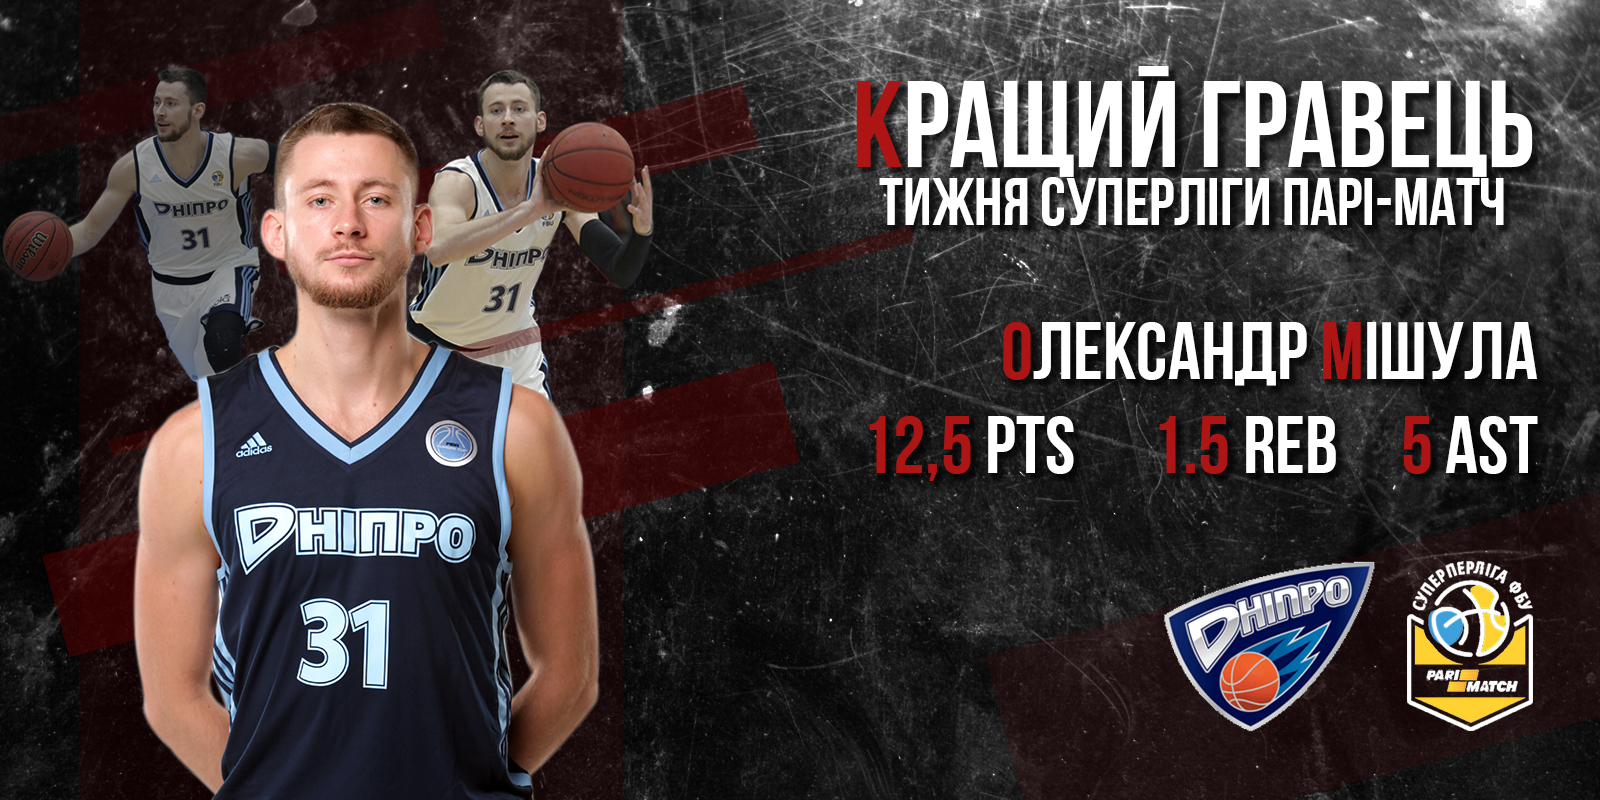 Головними претендентами на титул MVP тижня були збірники Олександр Мішула і Олександр Кольченко